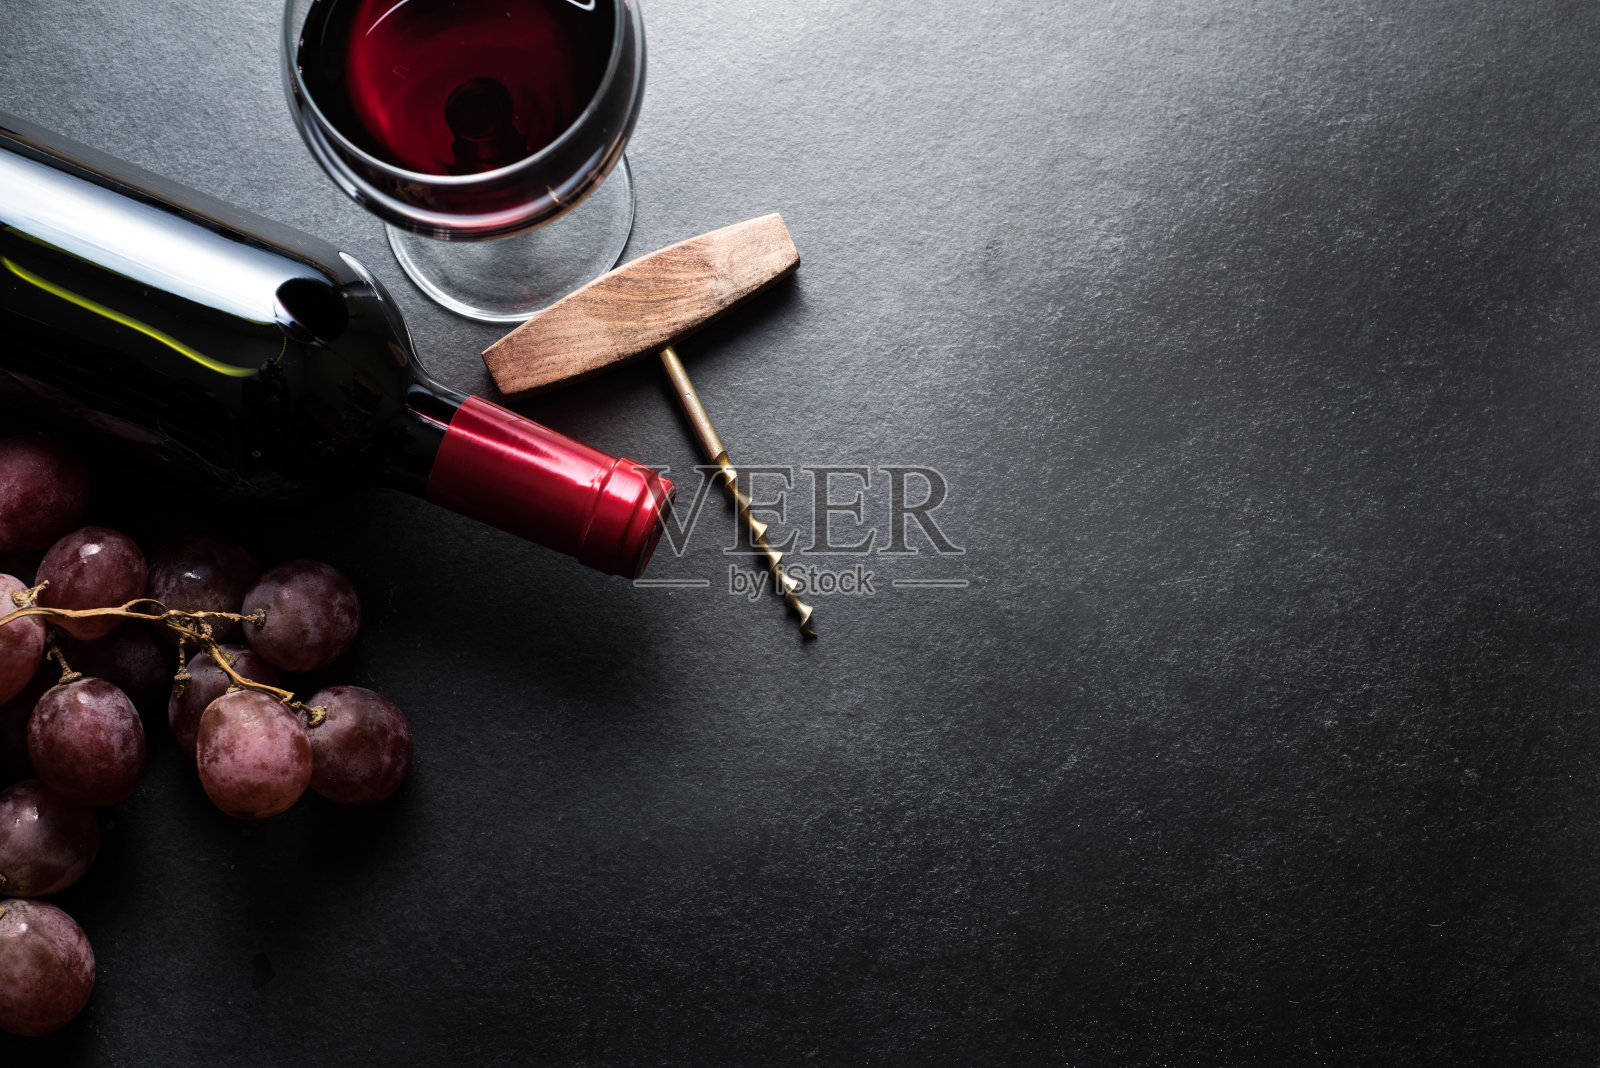 红酒和葡萄边框背景照片摄影图片